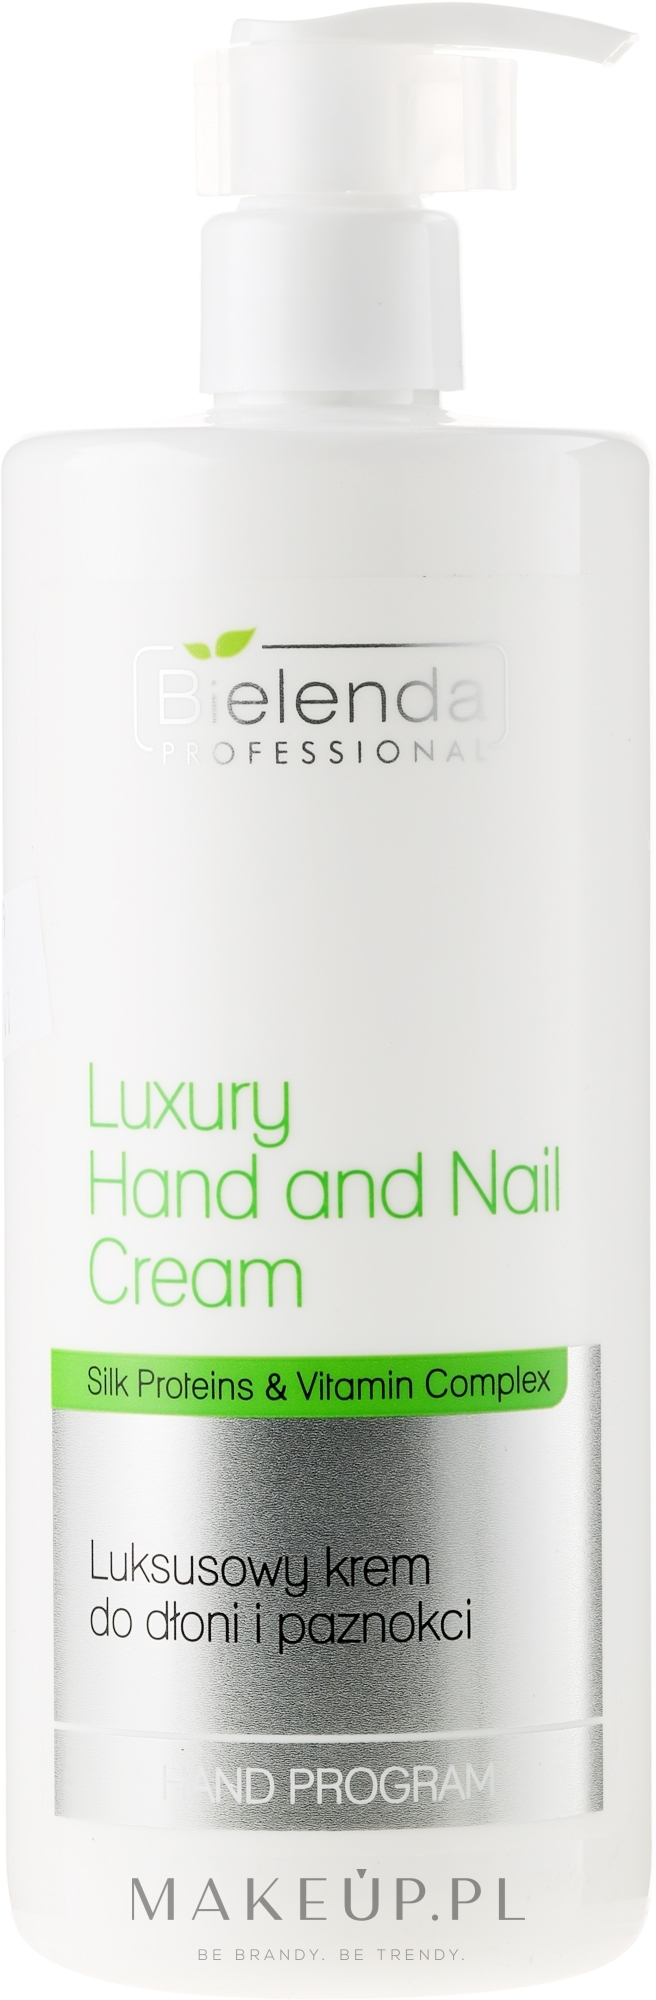 Luksusowy krem do dłoni i paznokci - Bielenda Professional Luxury Hand and Nail Cream — Zdjęcie 500 ml